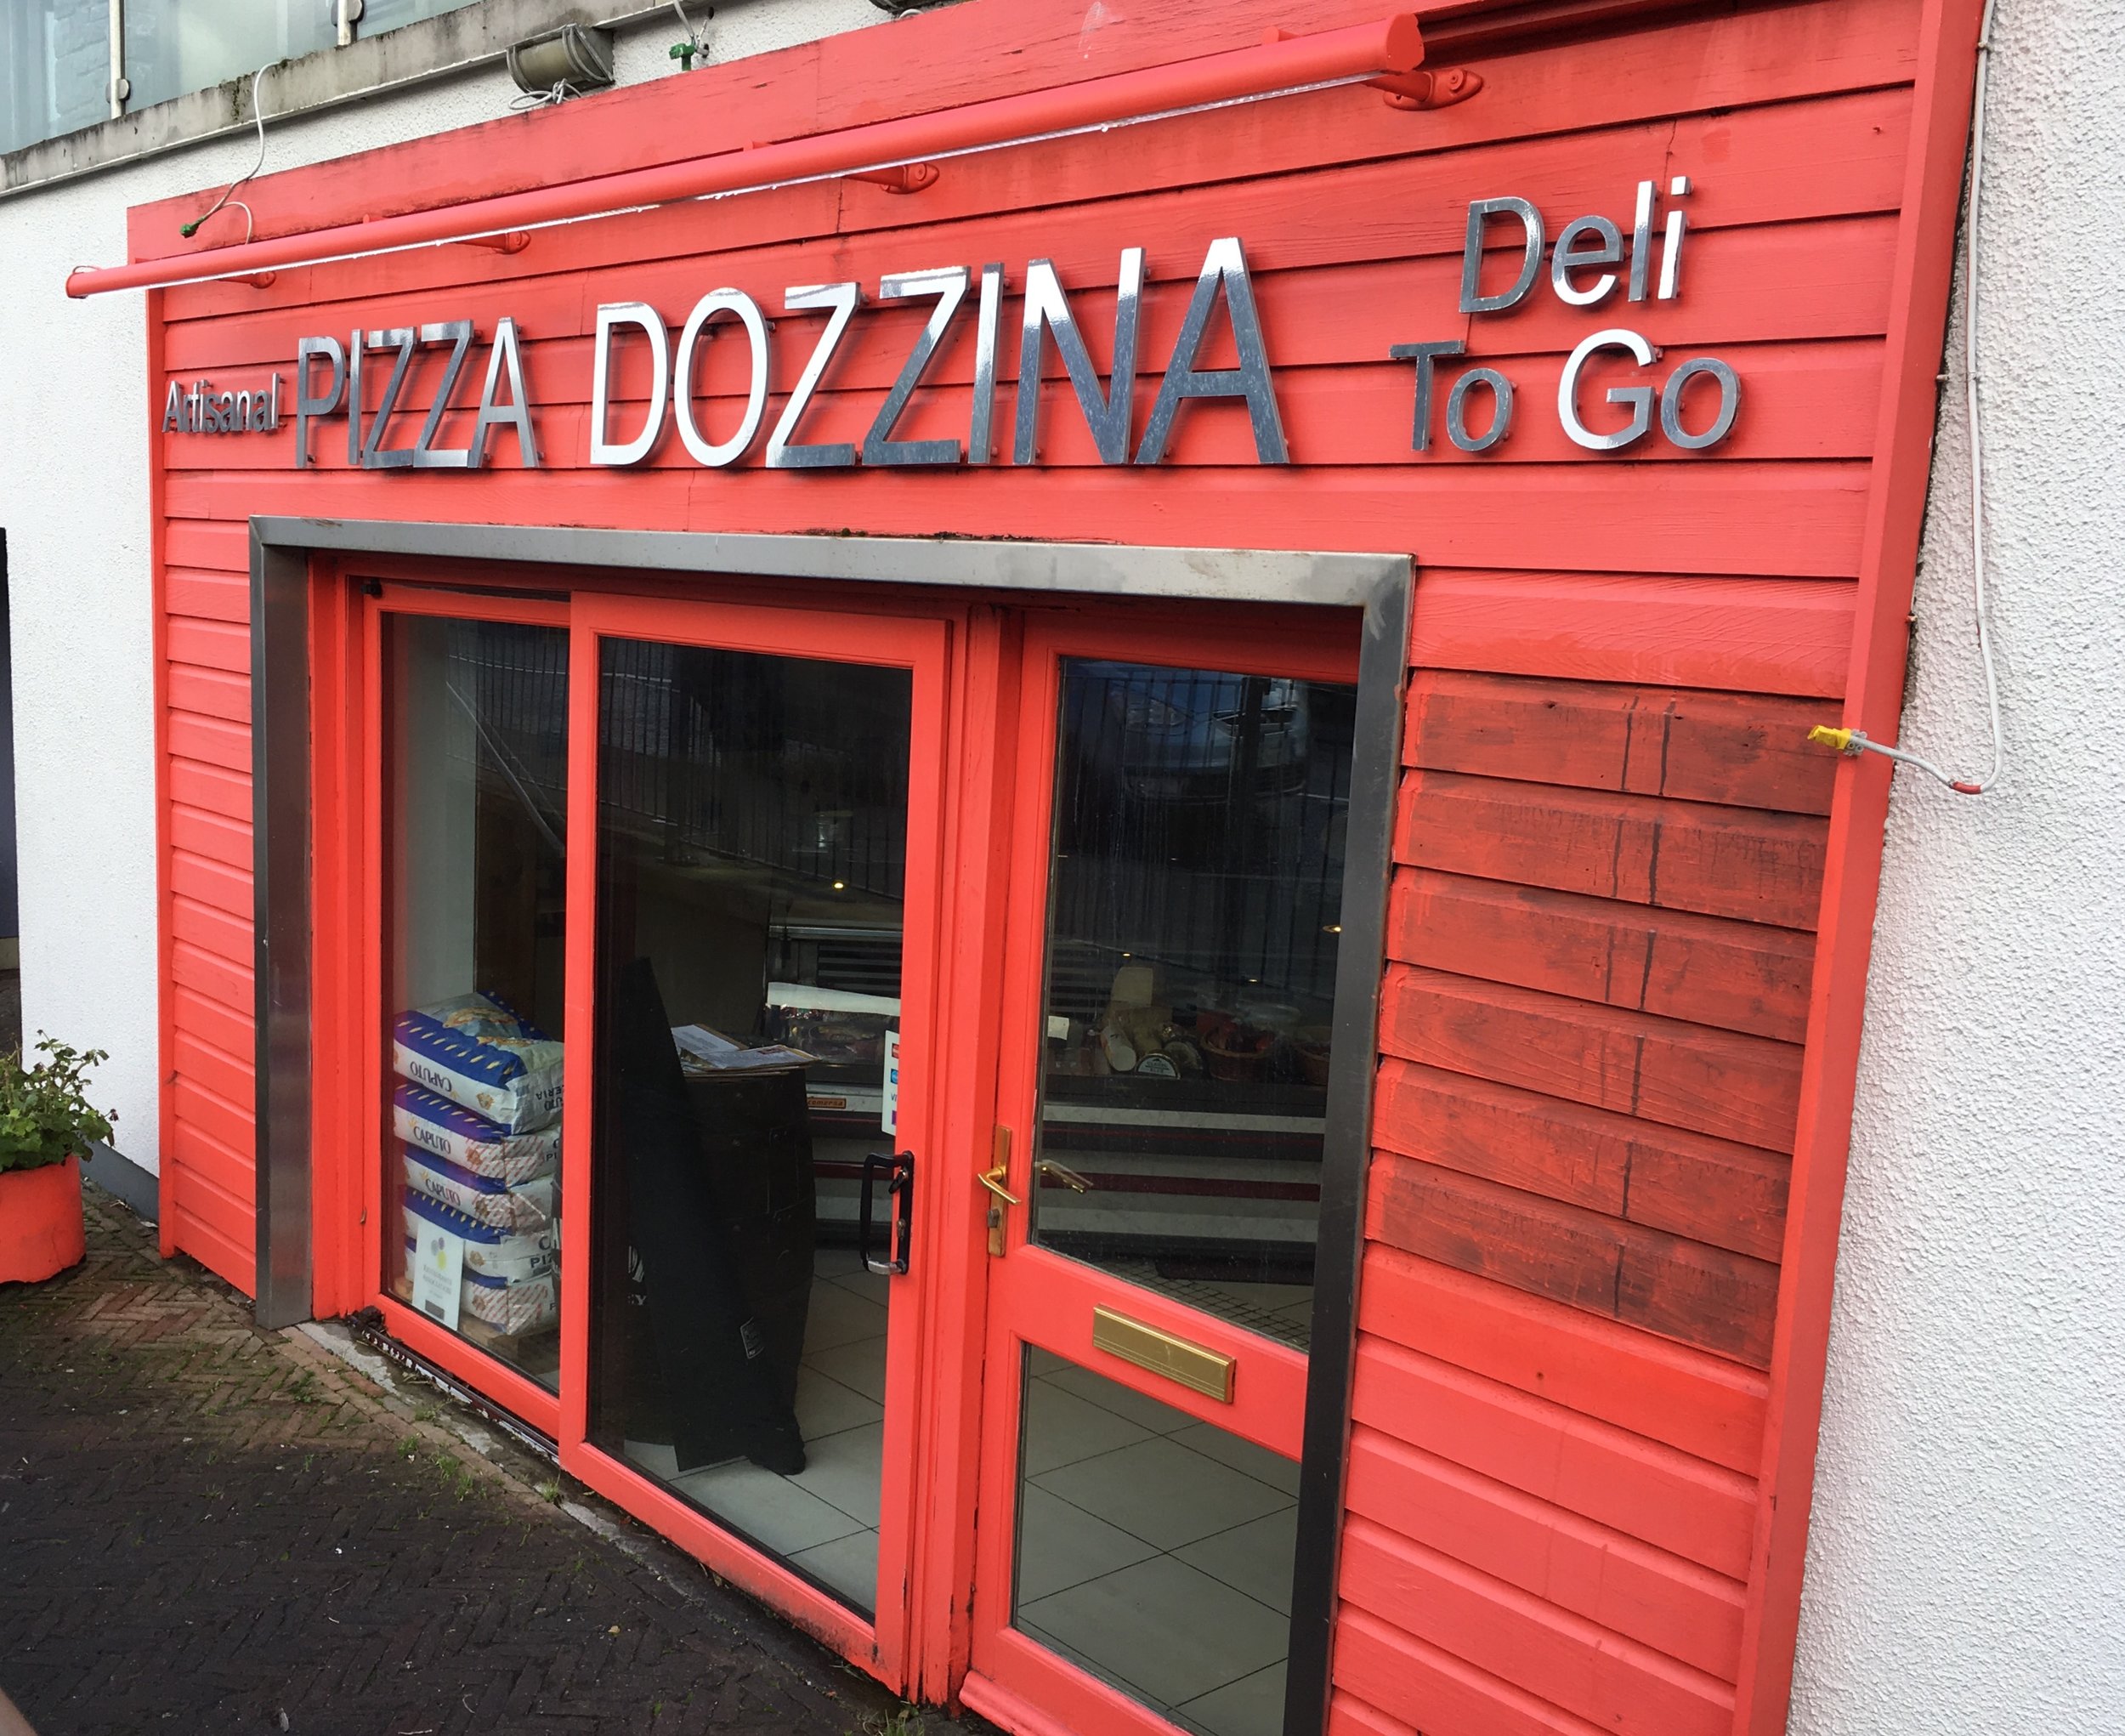 Pizza Dozzina